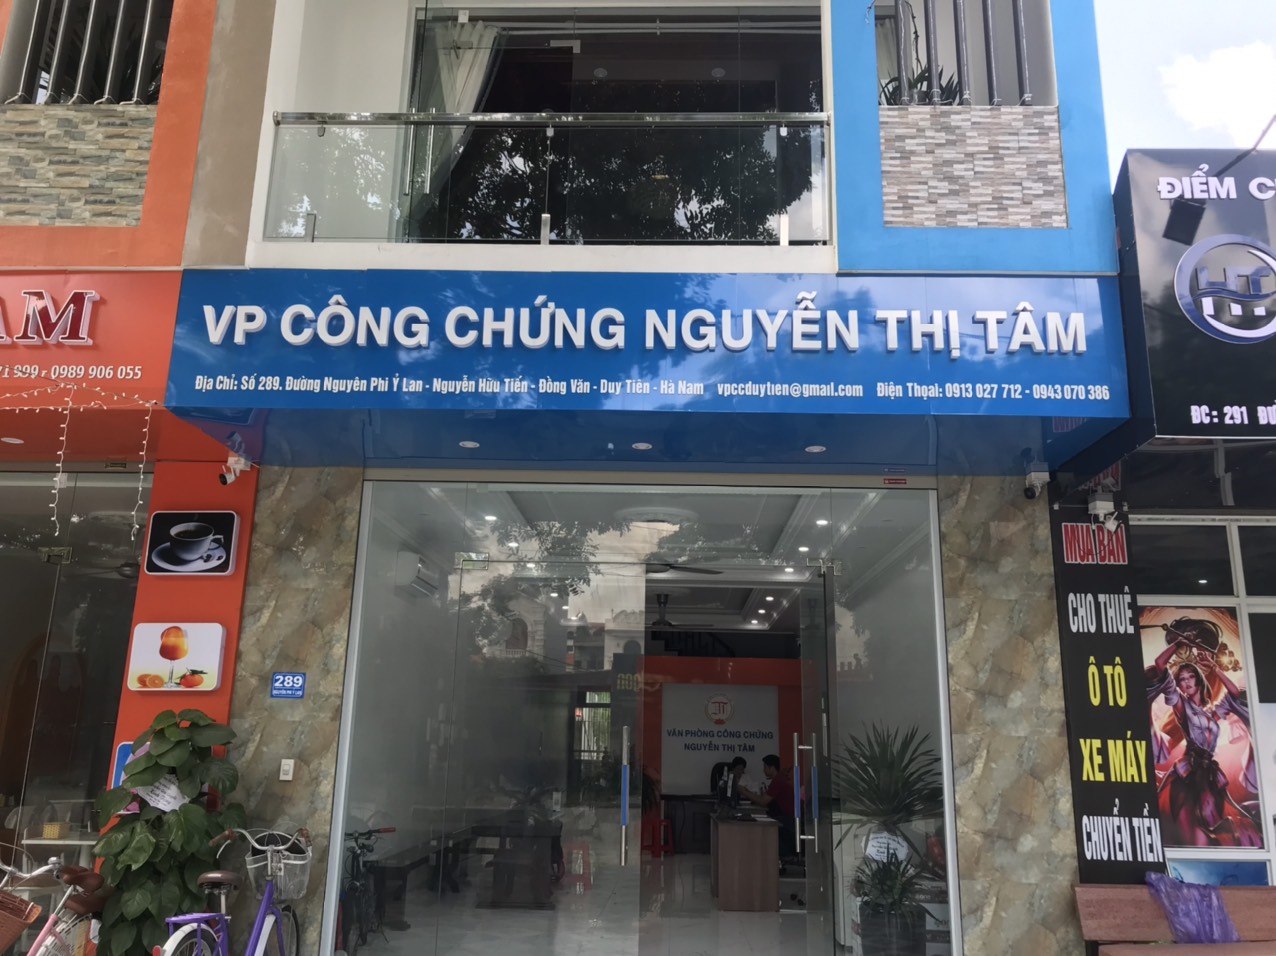 Liên hệ Văn phòng công chứng Nguyễn Thị Tâm thông tin địa chỉ số điện thoại